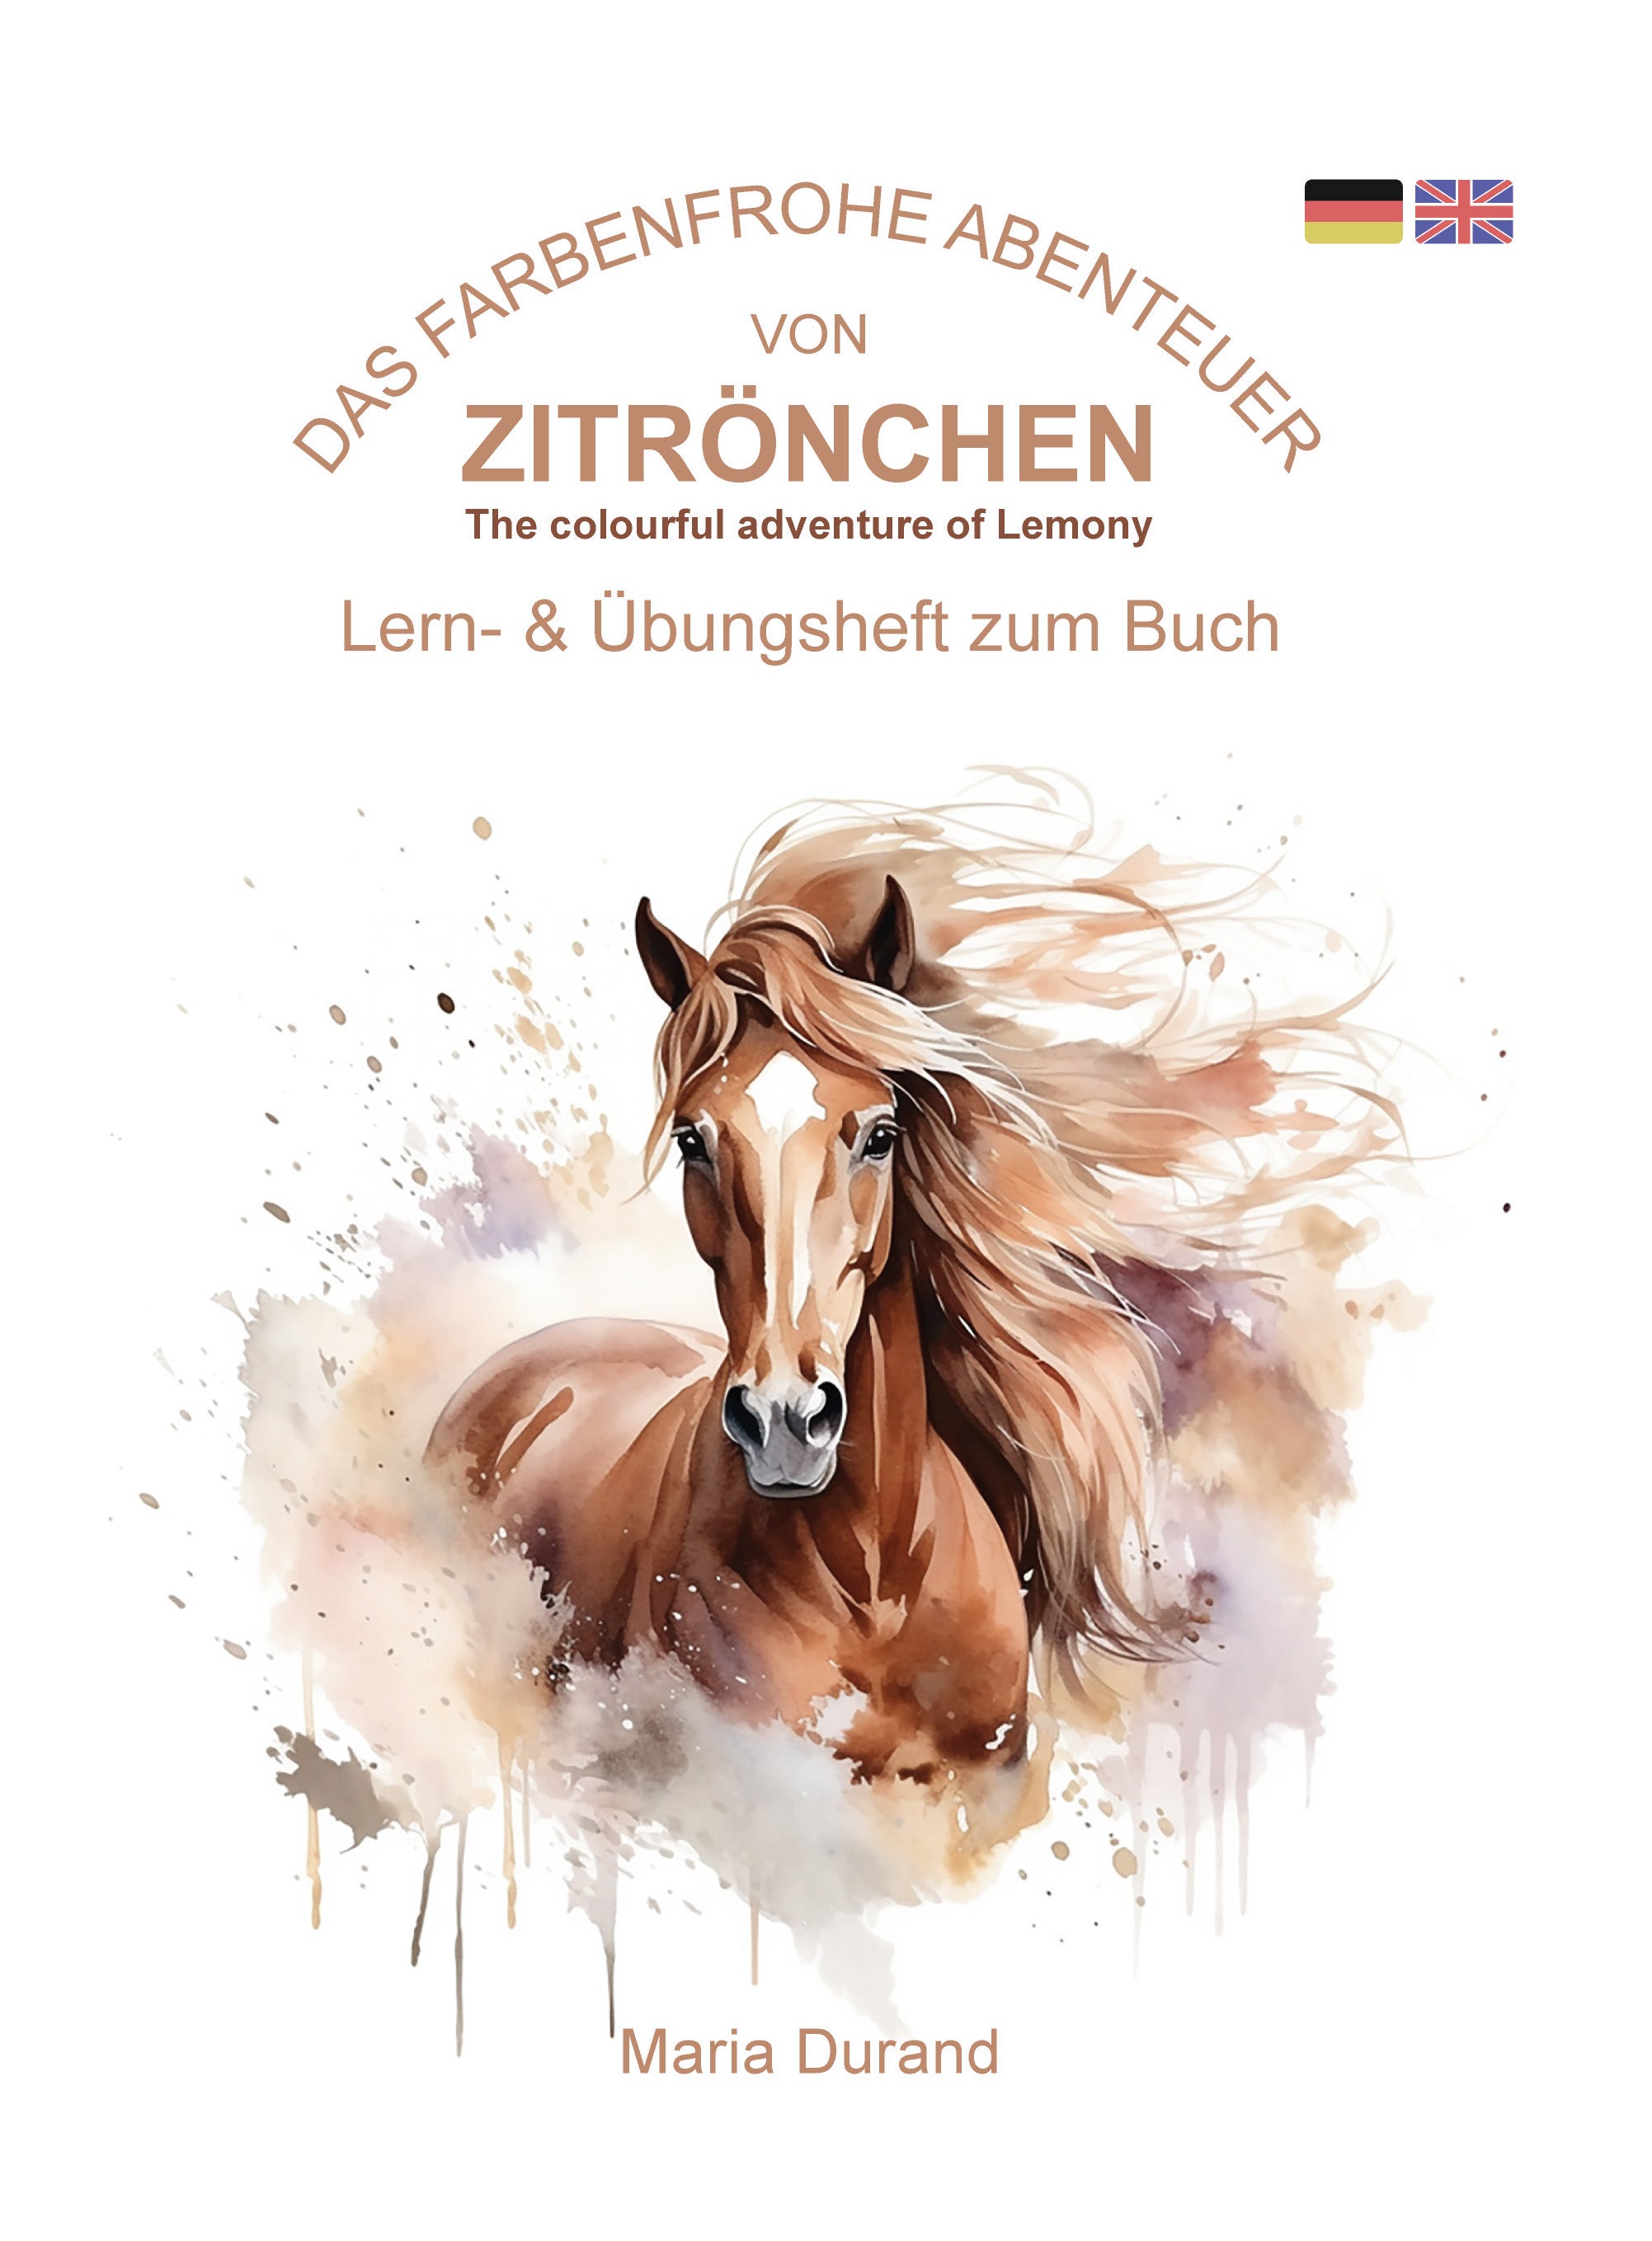 Zitrönchen - Lemony Lern- und Übungsheft zum Buch Deutsch/Englisch